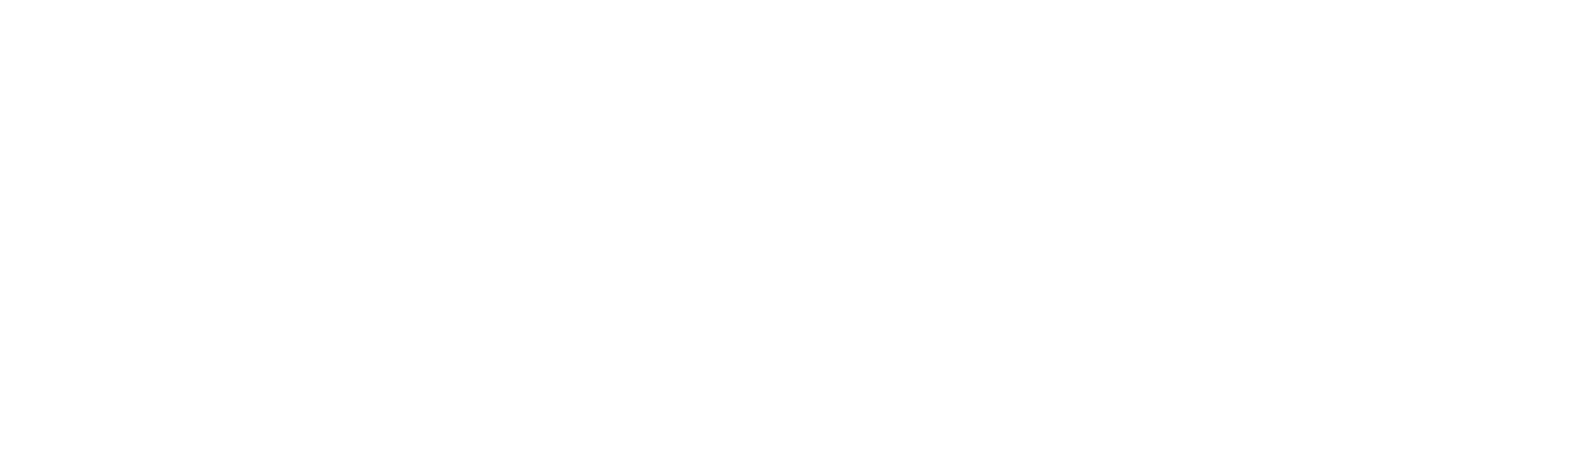 DSV logo for dark backgrounds (transparent PNG)